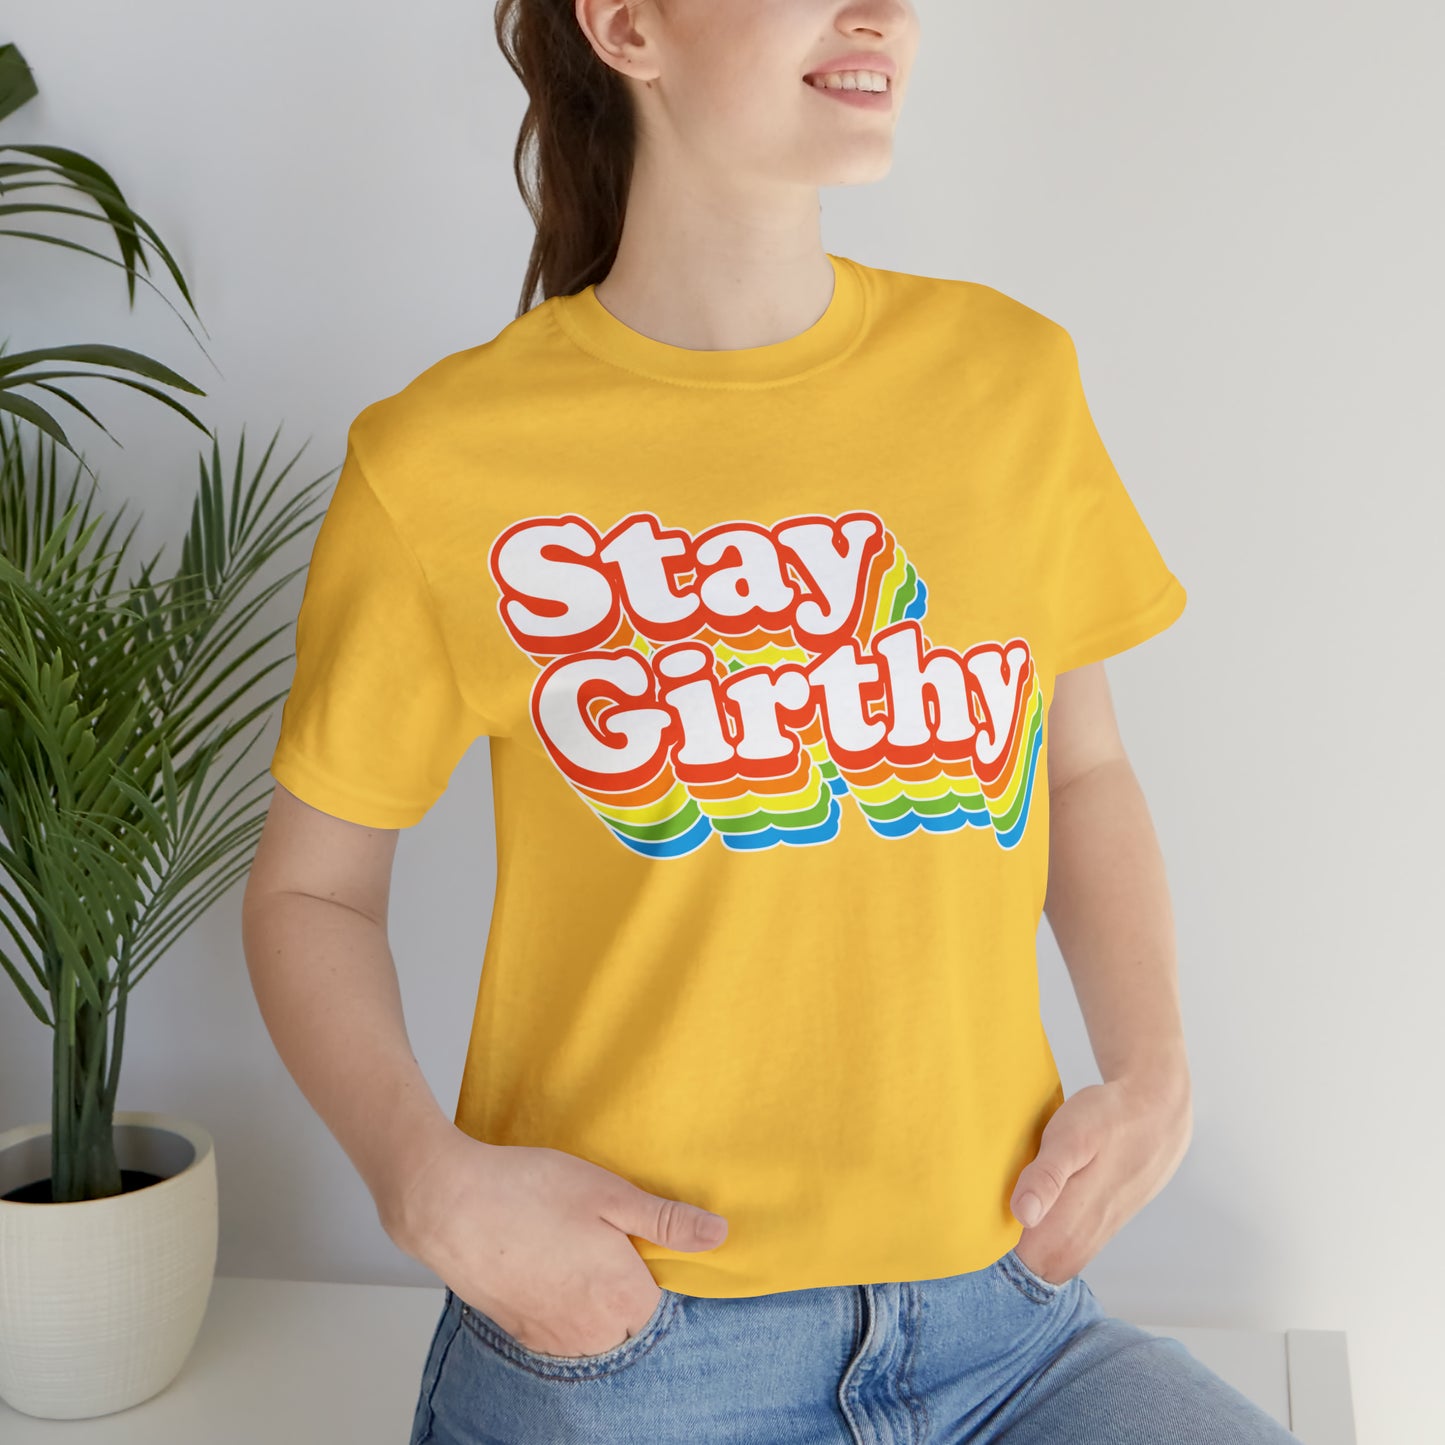 Stay Girthy 70s-chic